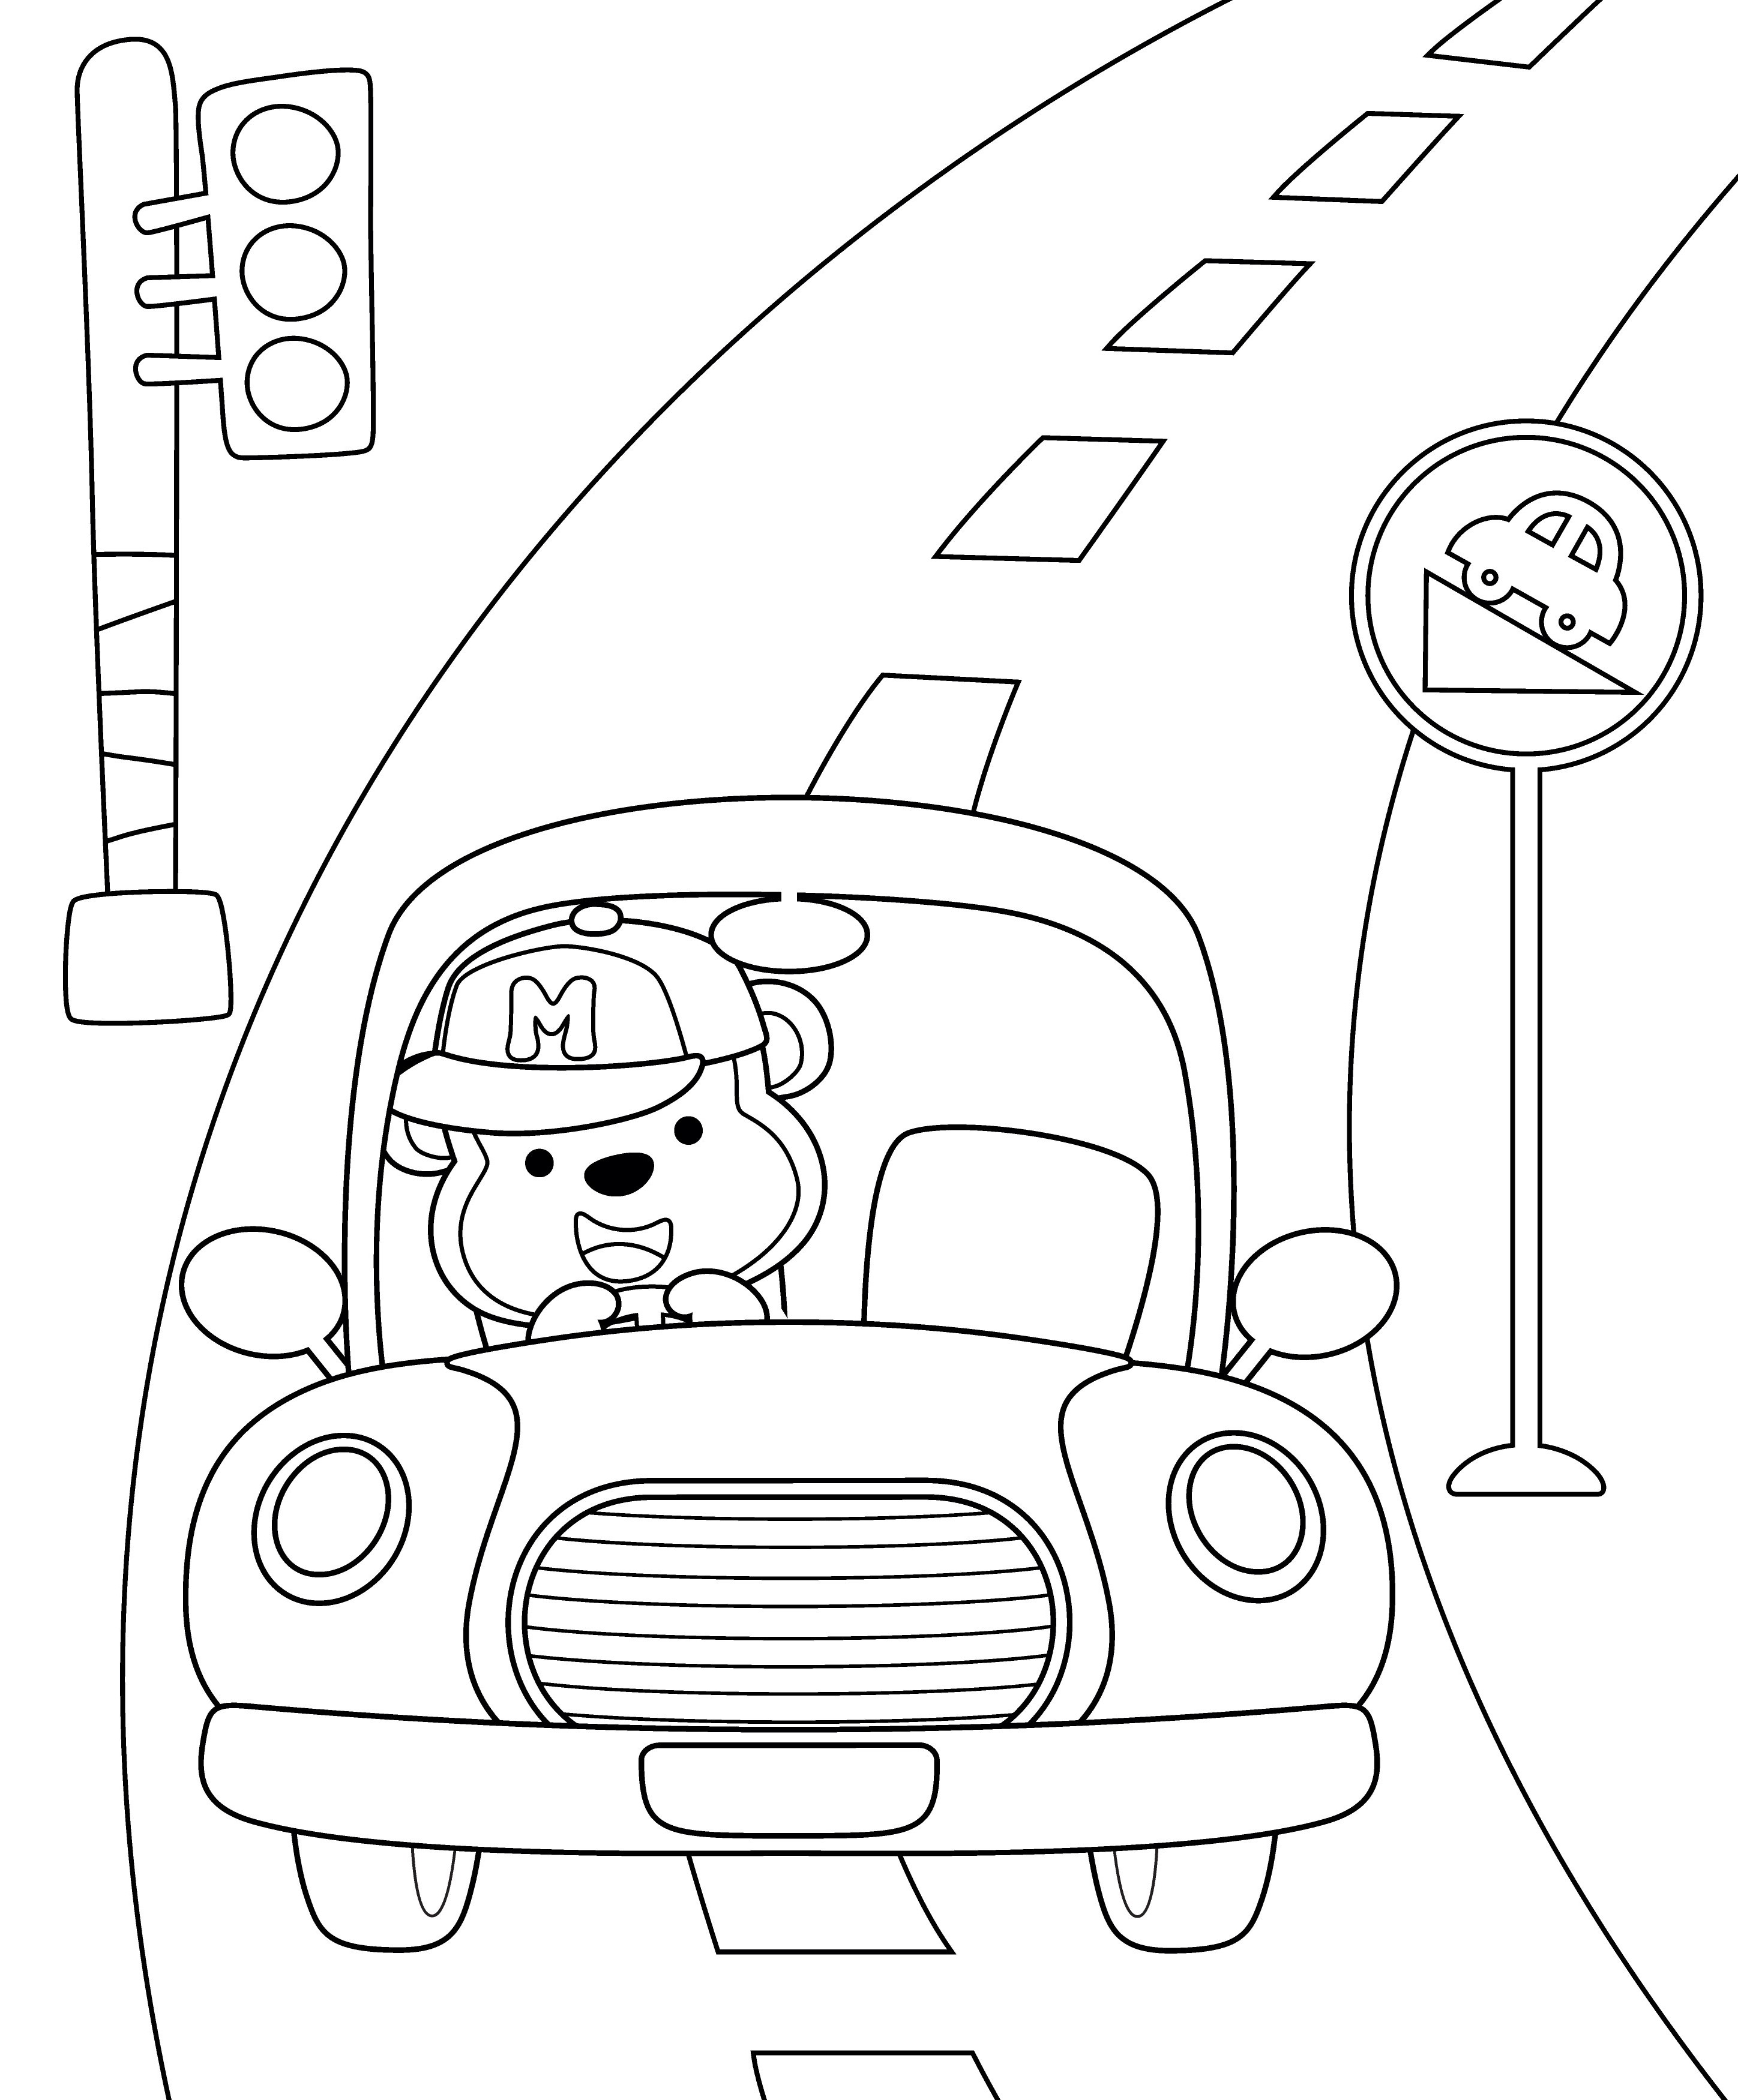 Раскраска мишка едет по дороге за рулем такси формата А4 в высоком качестве